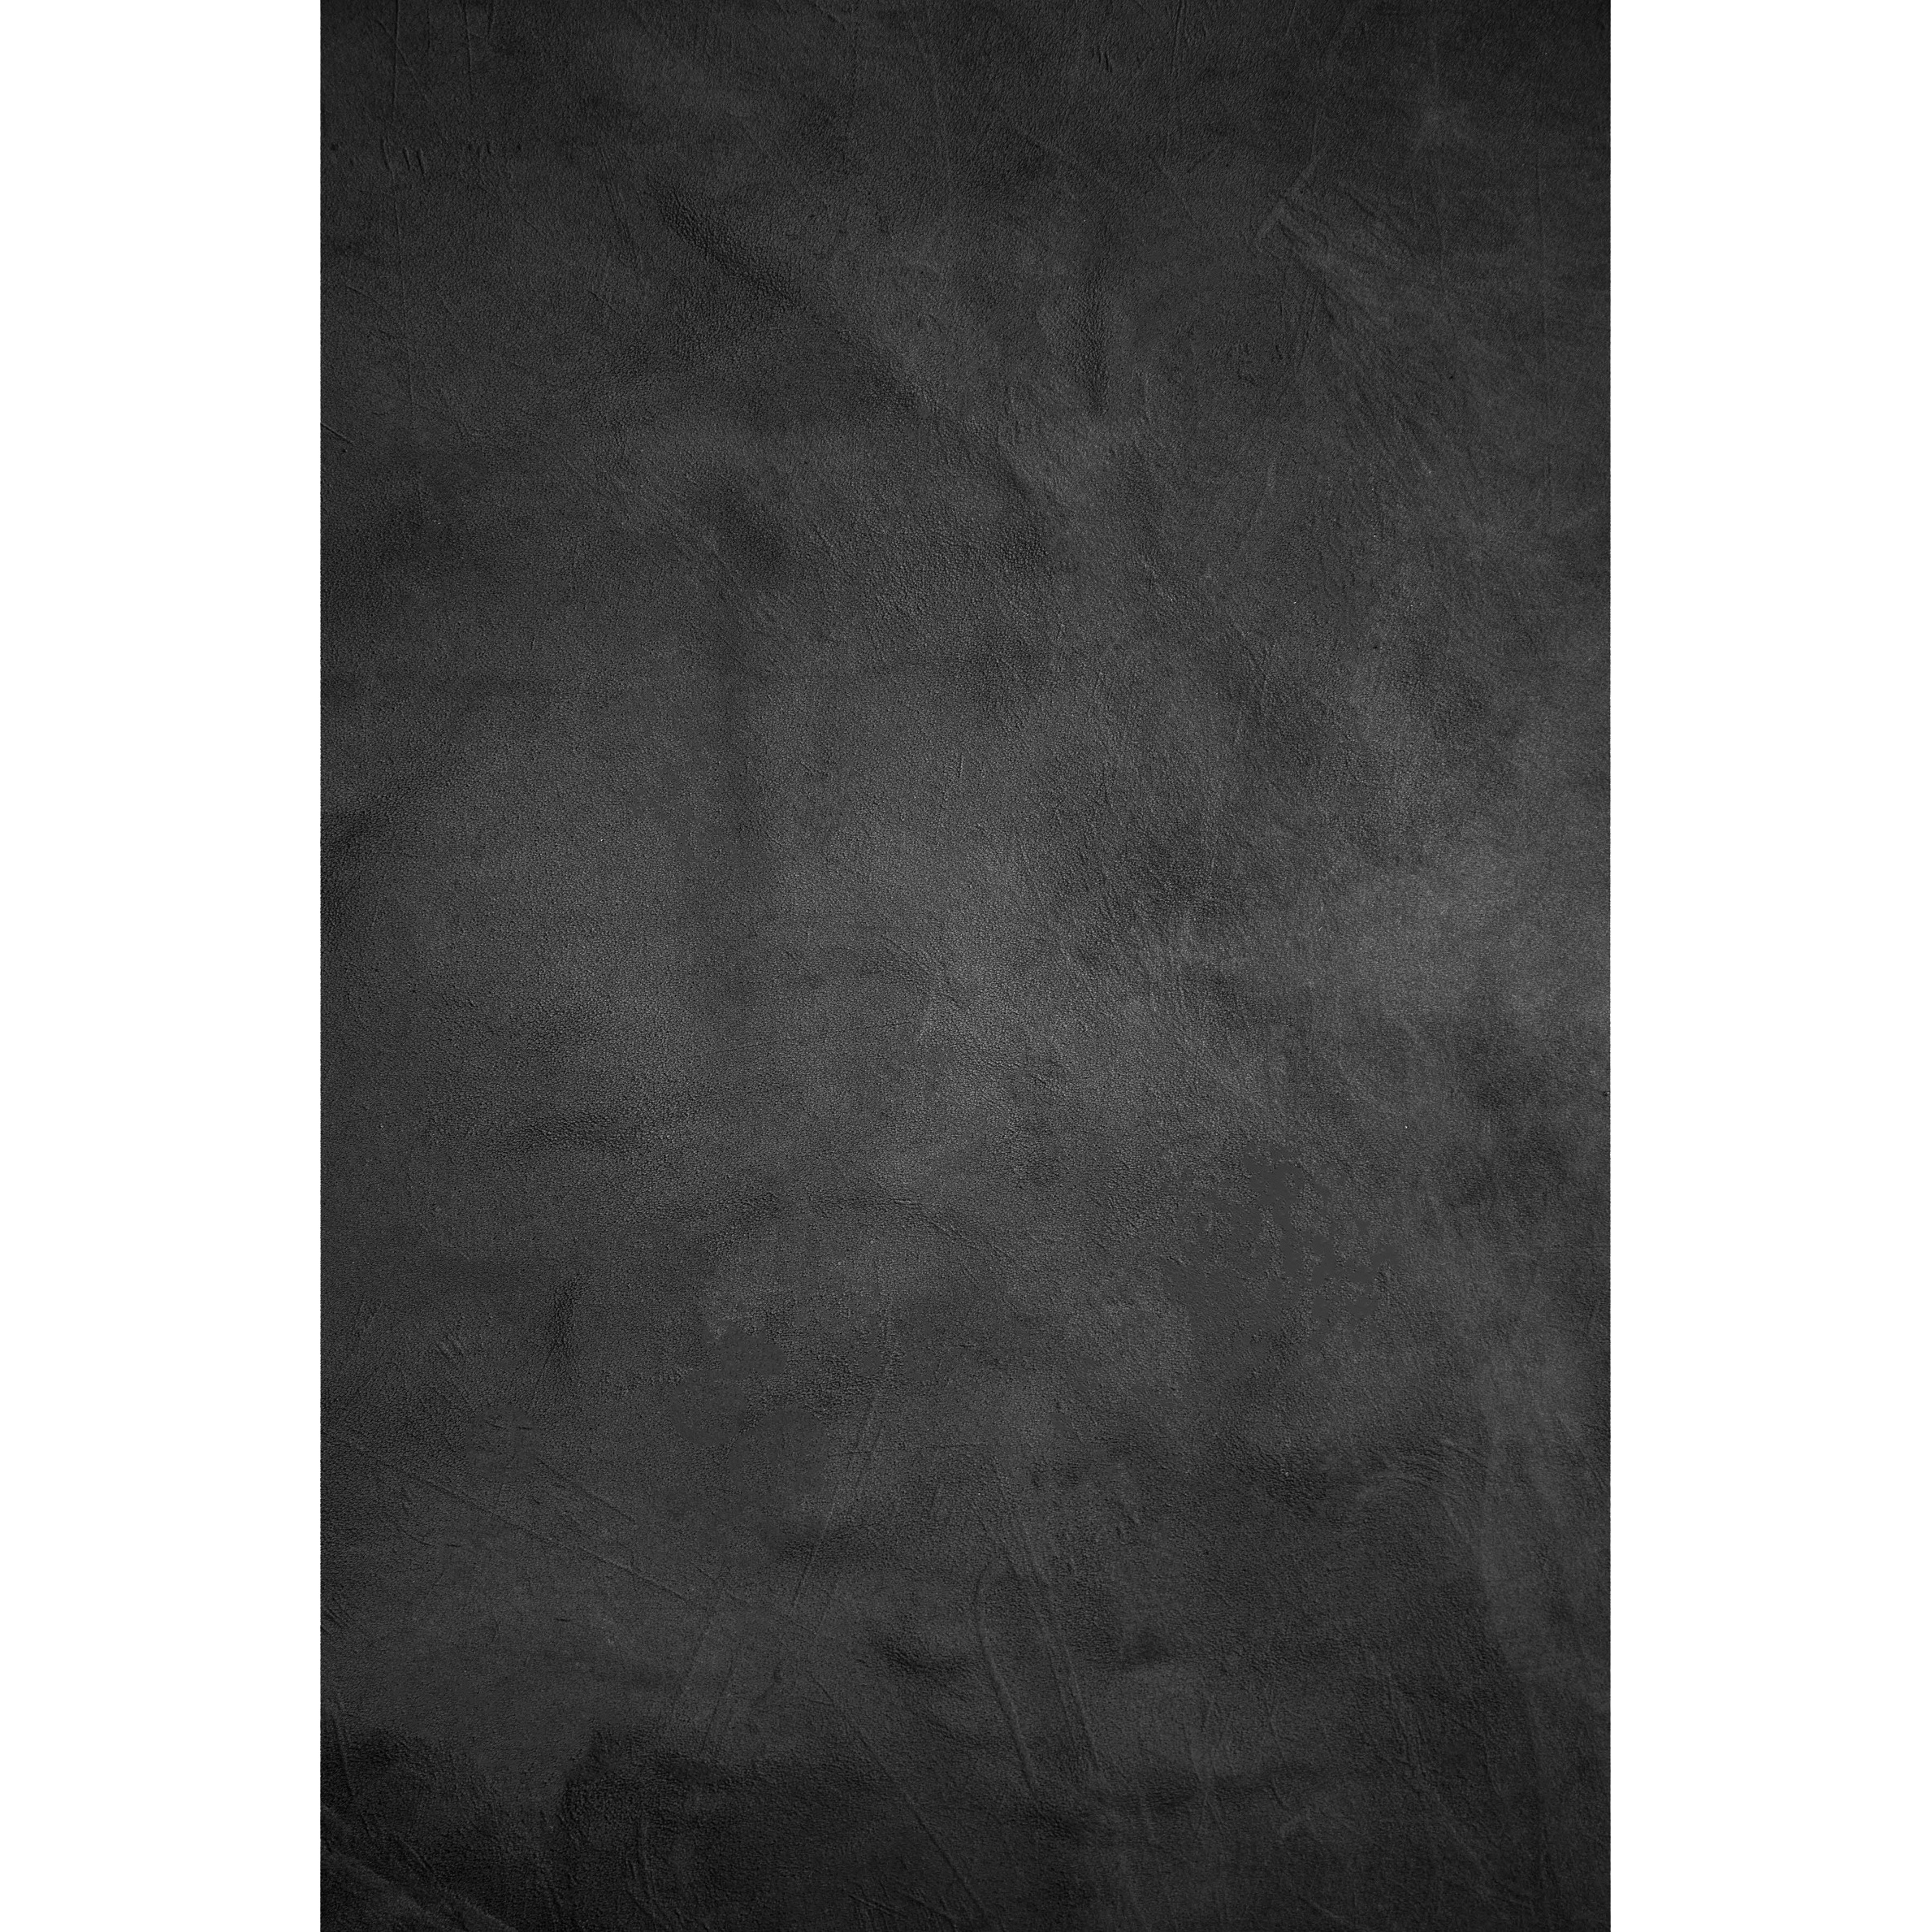 Fondale in Tessuto BRESSER con Motivo fotografico 80 x 120 cm - Nero